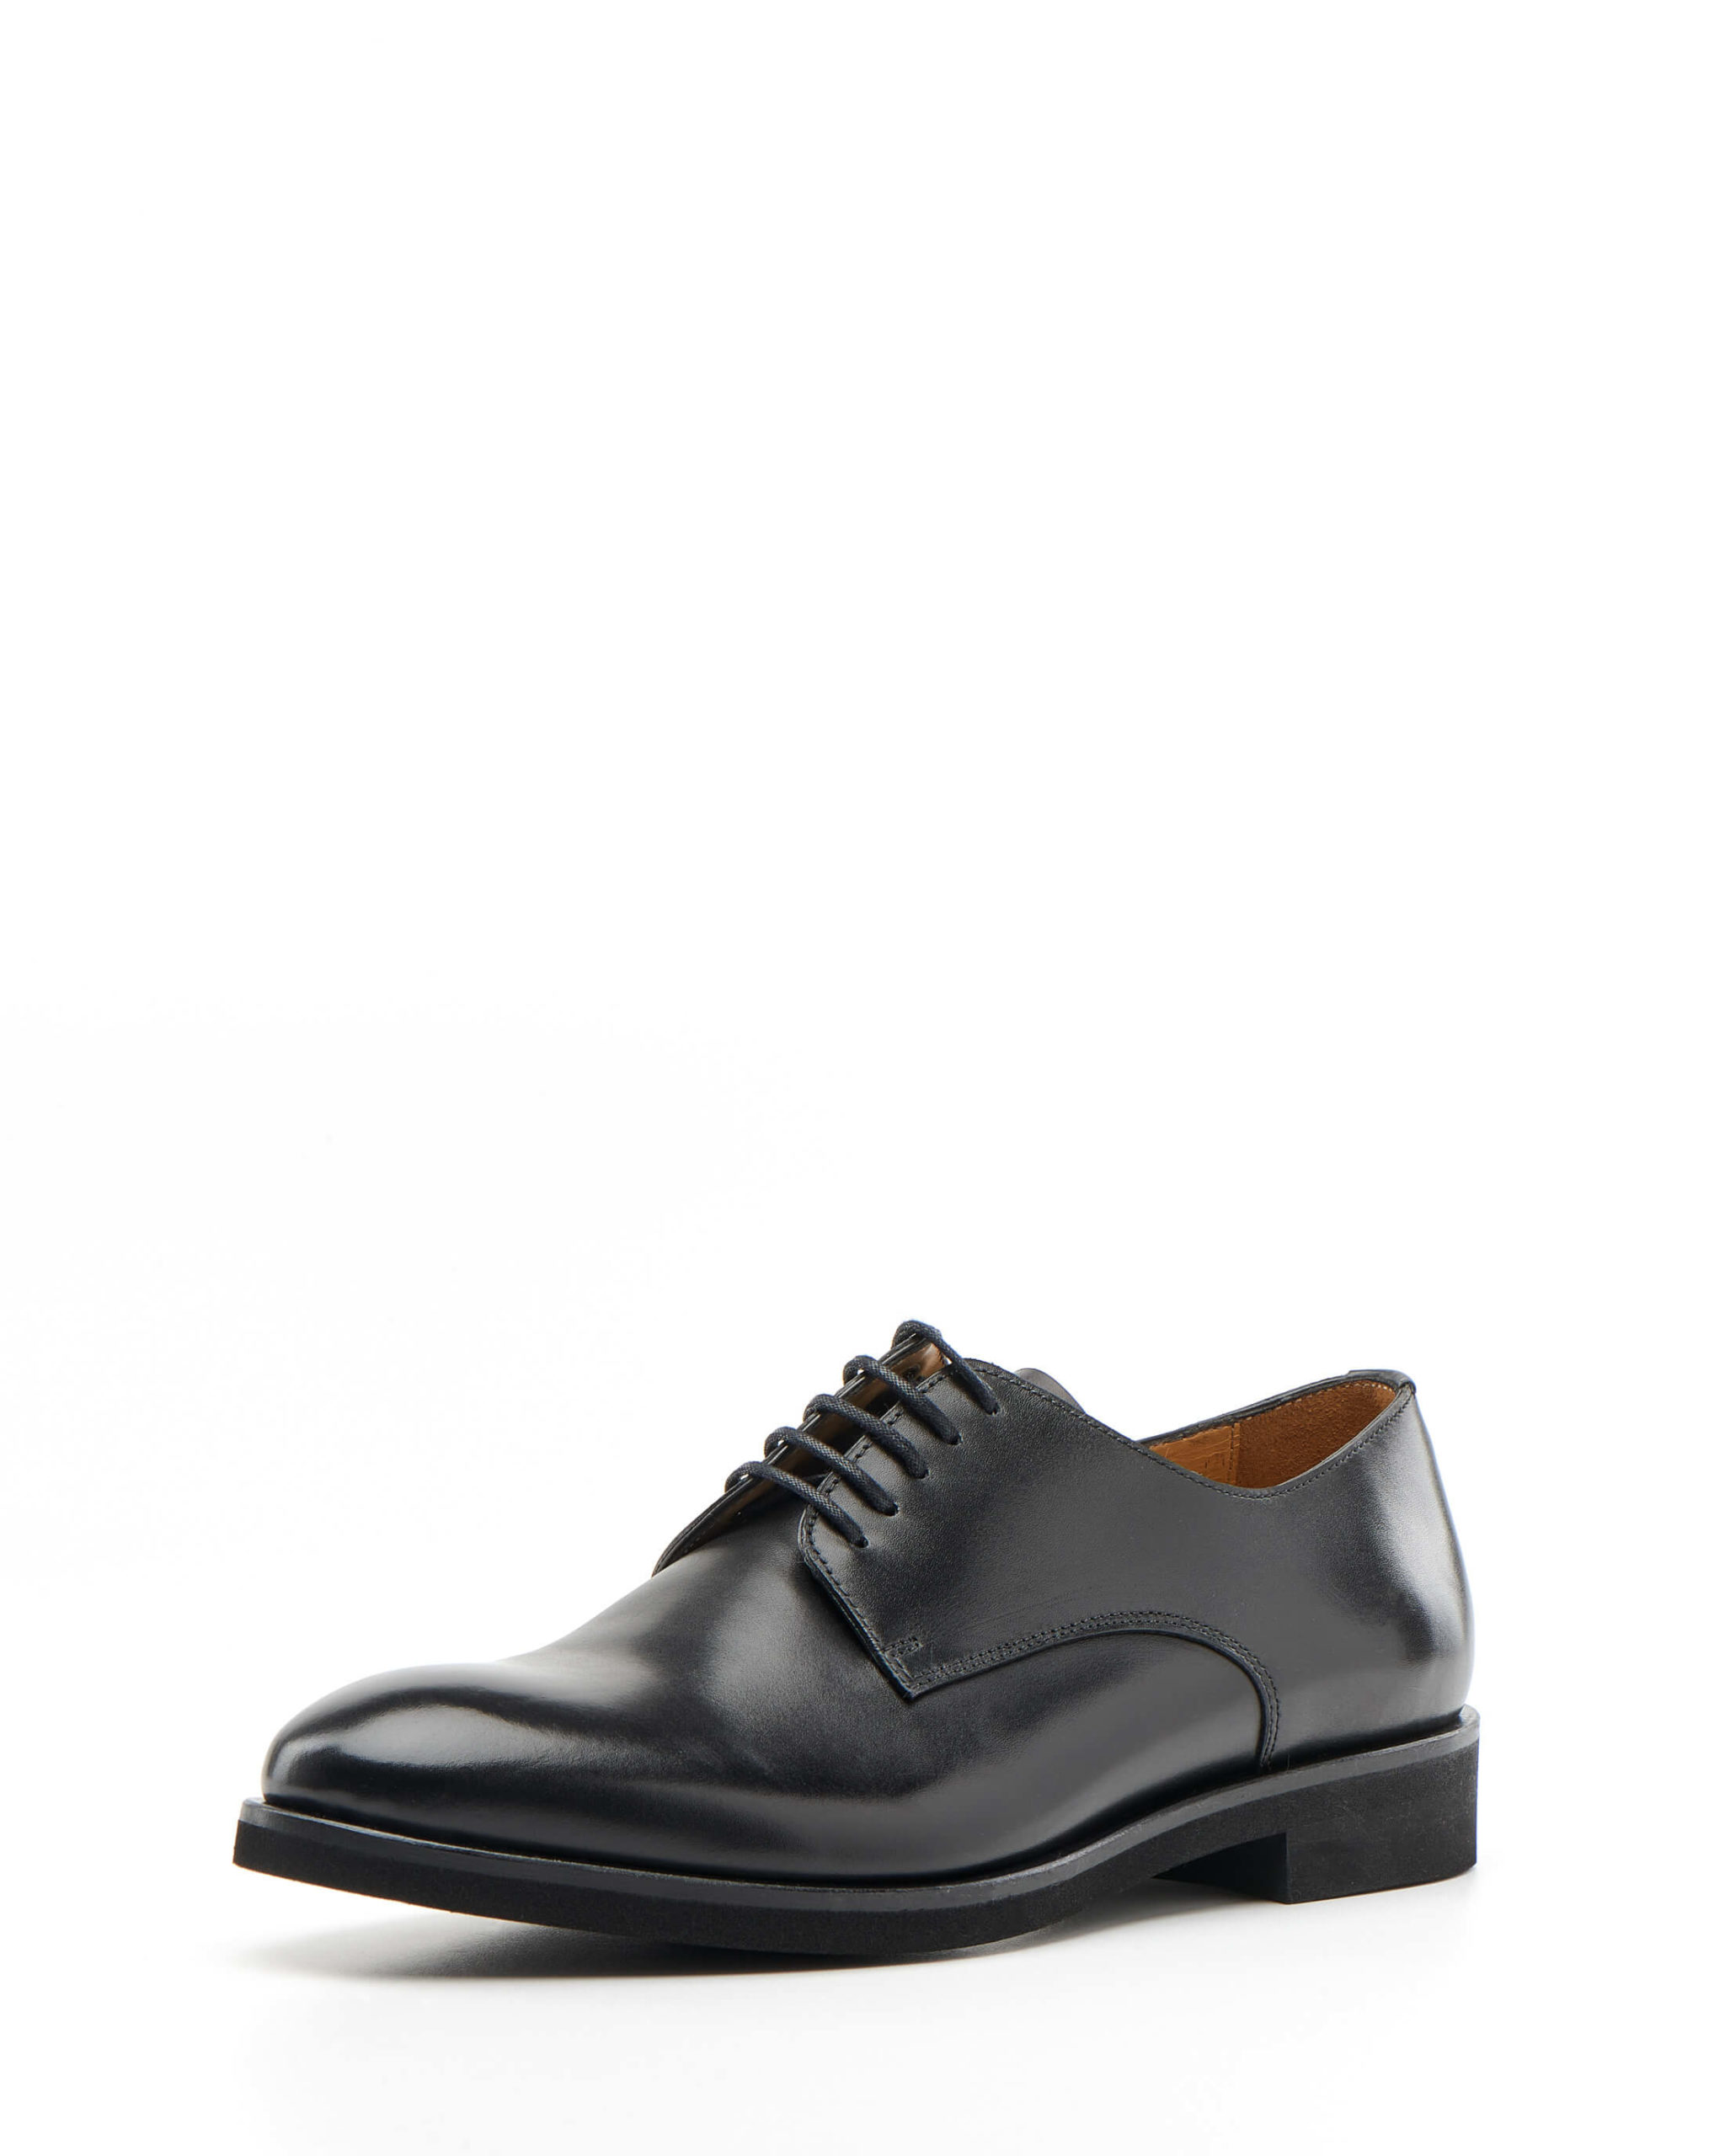 Luis Onofre Portuguese Shoes FW22 – HS0787_01 – Decaf Black-2